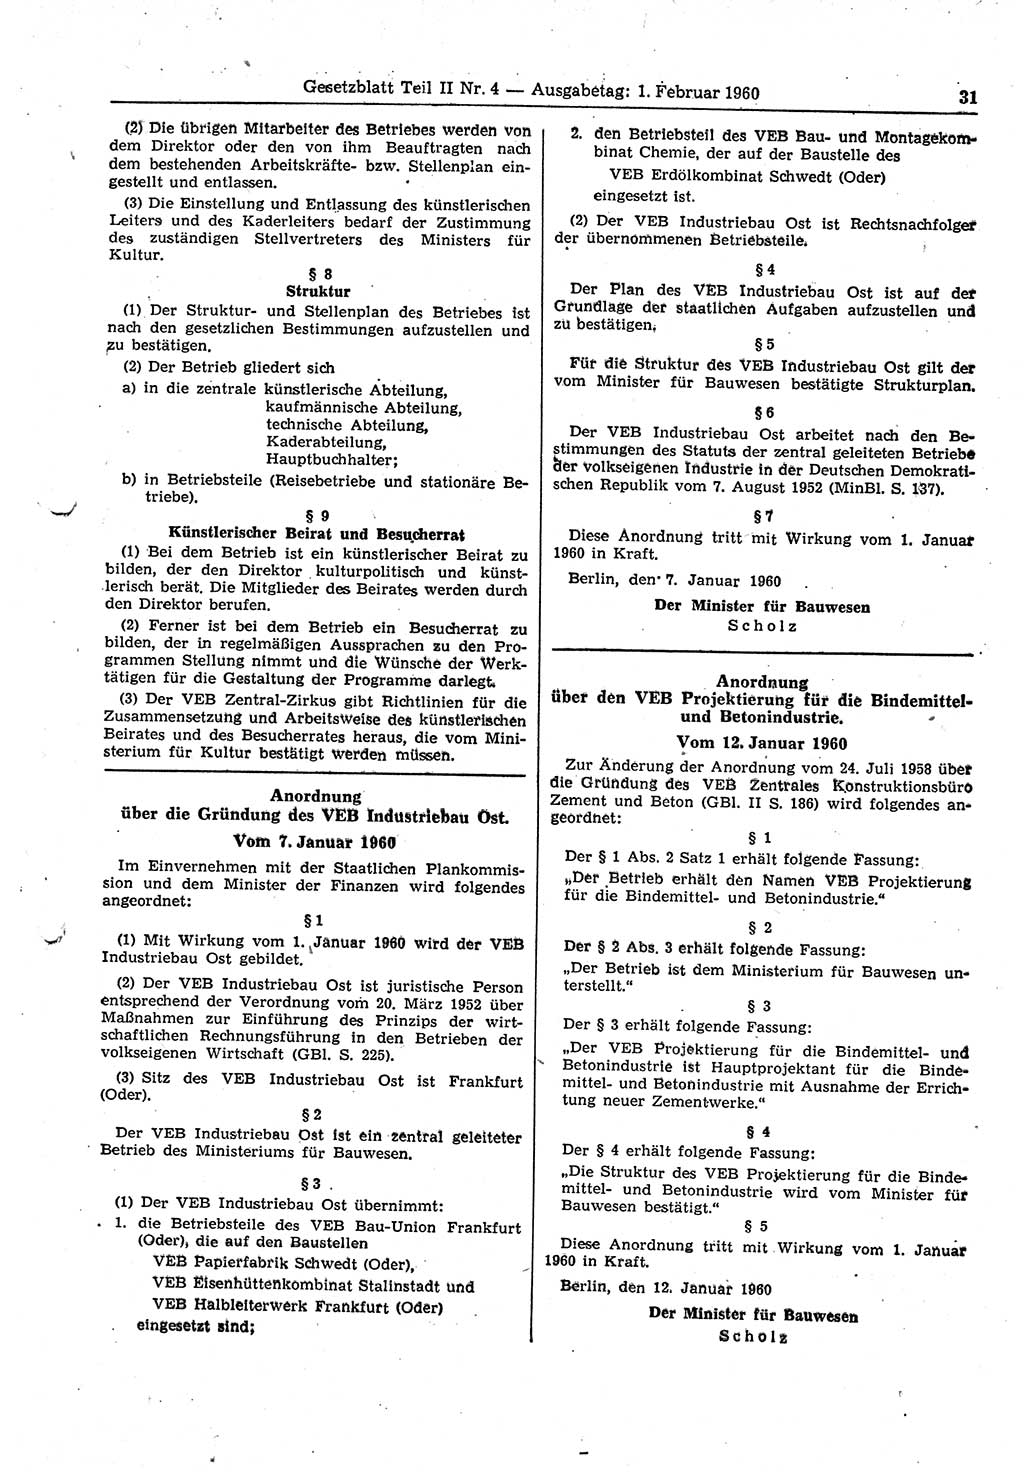 Gesetzblatt (GBl.) der Deutschen Demokratischen Republik (DDR) Teil ⅠⅠ 1960, Seite 31 (GBl. DDR ⅠⅠ 1960, S. 31)